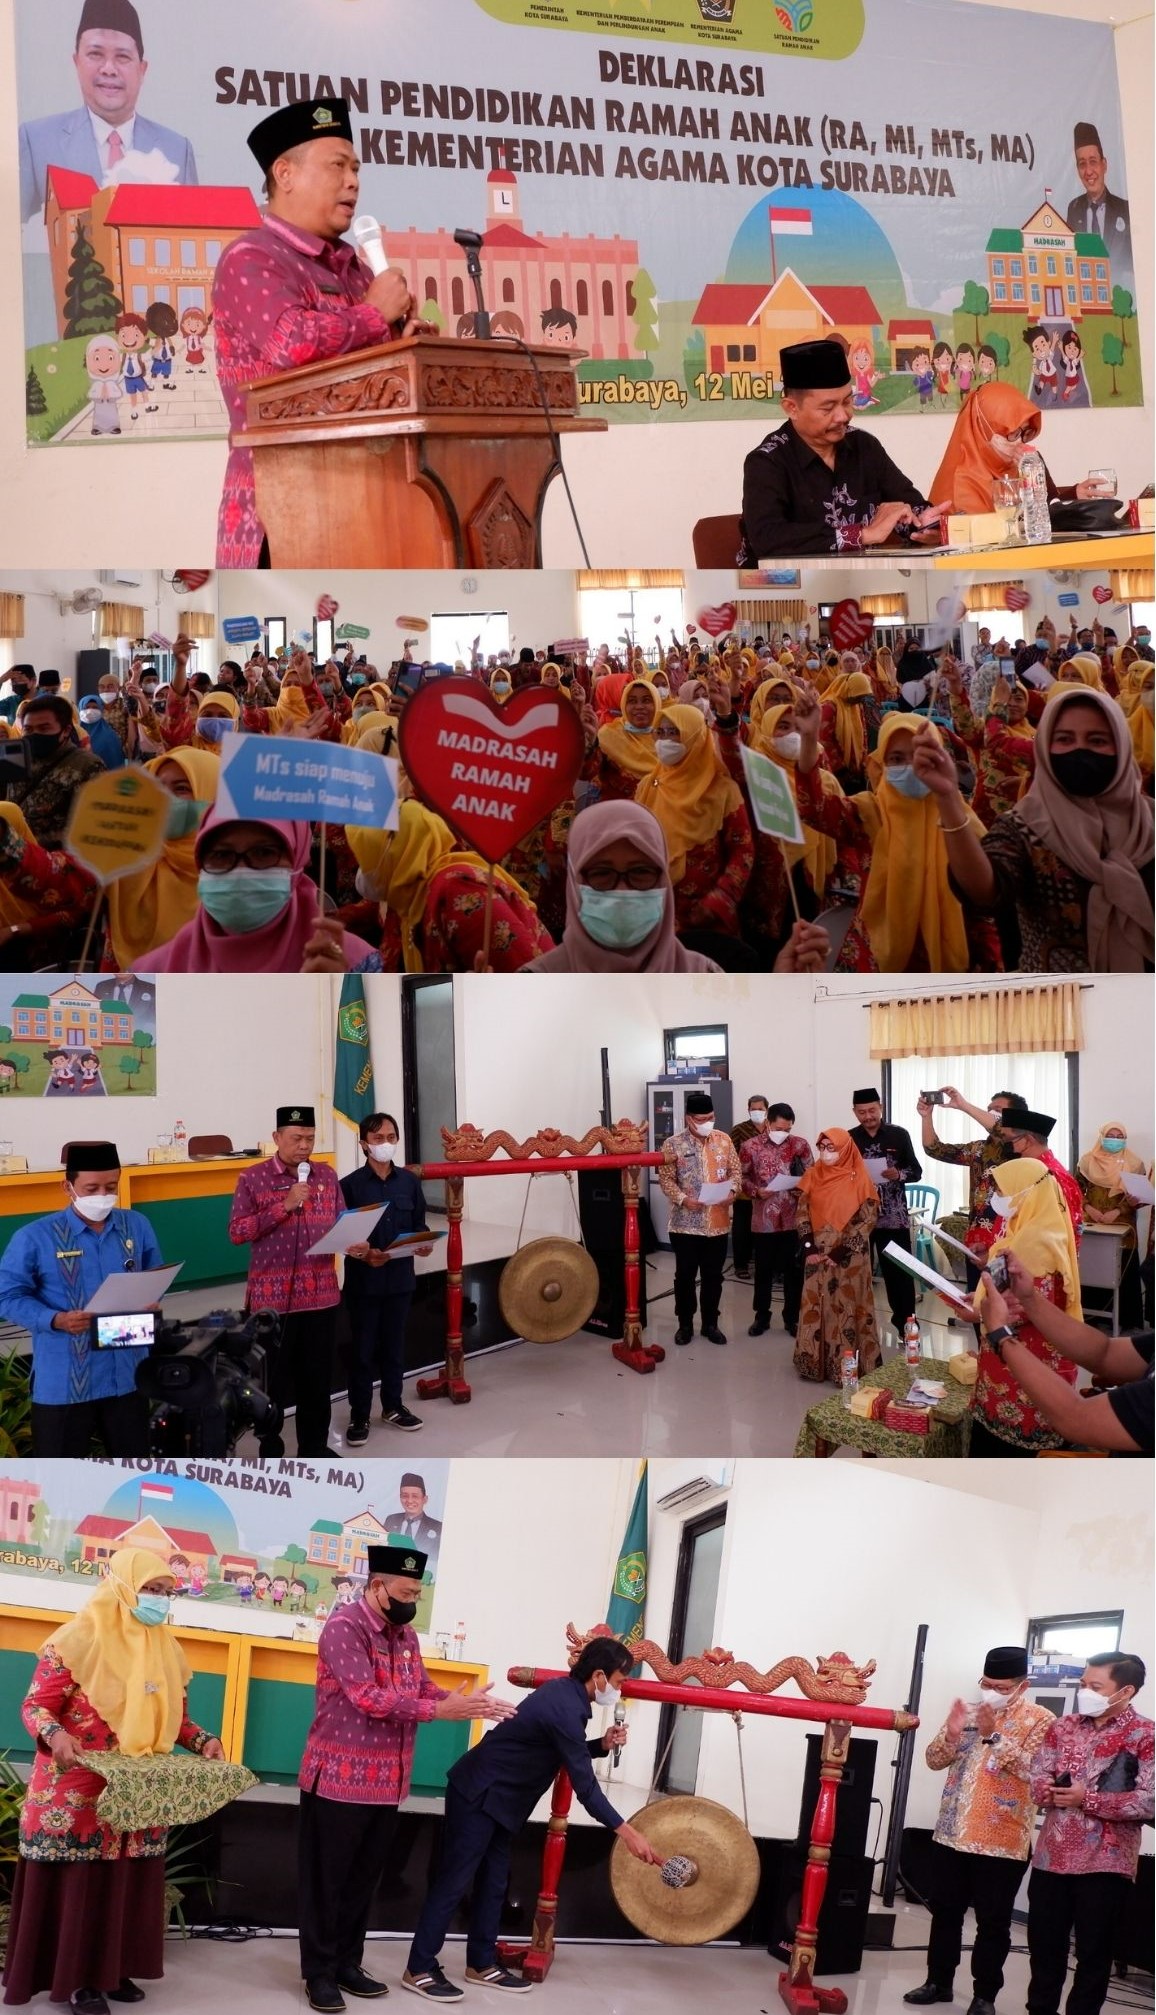 Deklarasi satuan pendidikan ramah anak (RA, MI, MTs, MA) Kementerian Agama Kota Surabaya